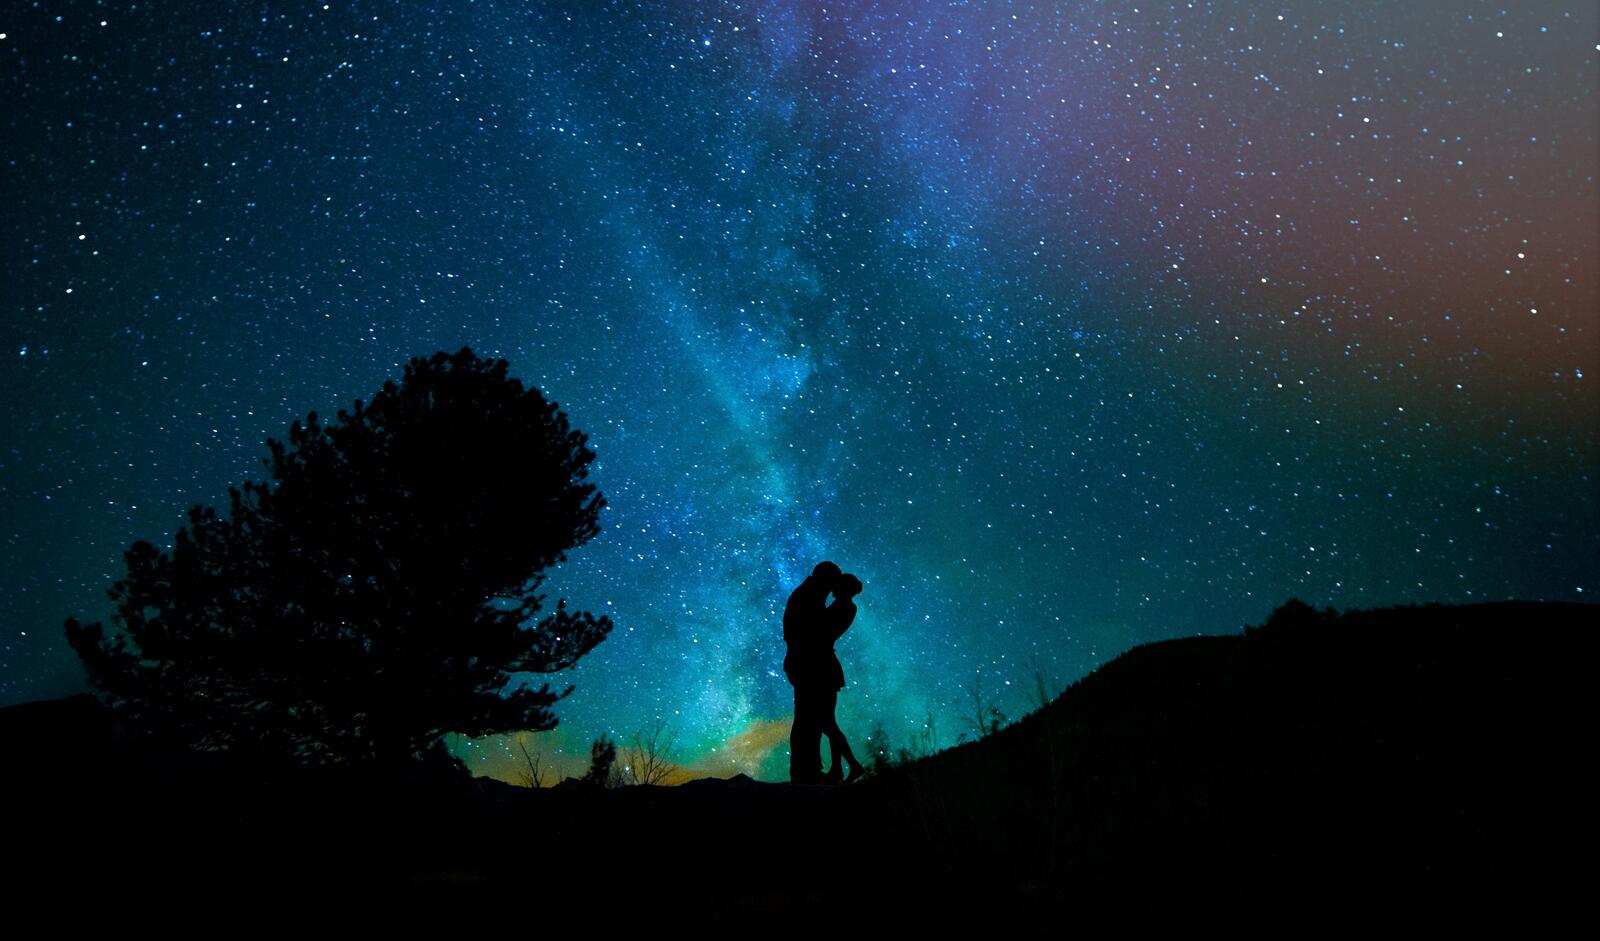 Бесплатное фото Силуэт молодой пары на фоне звездного неба